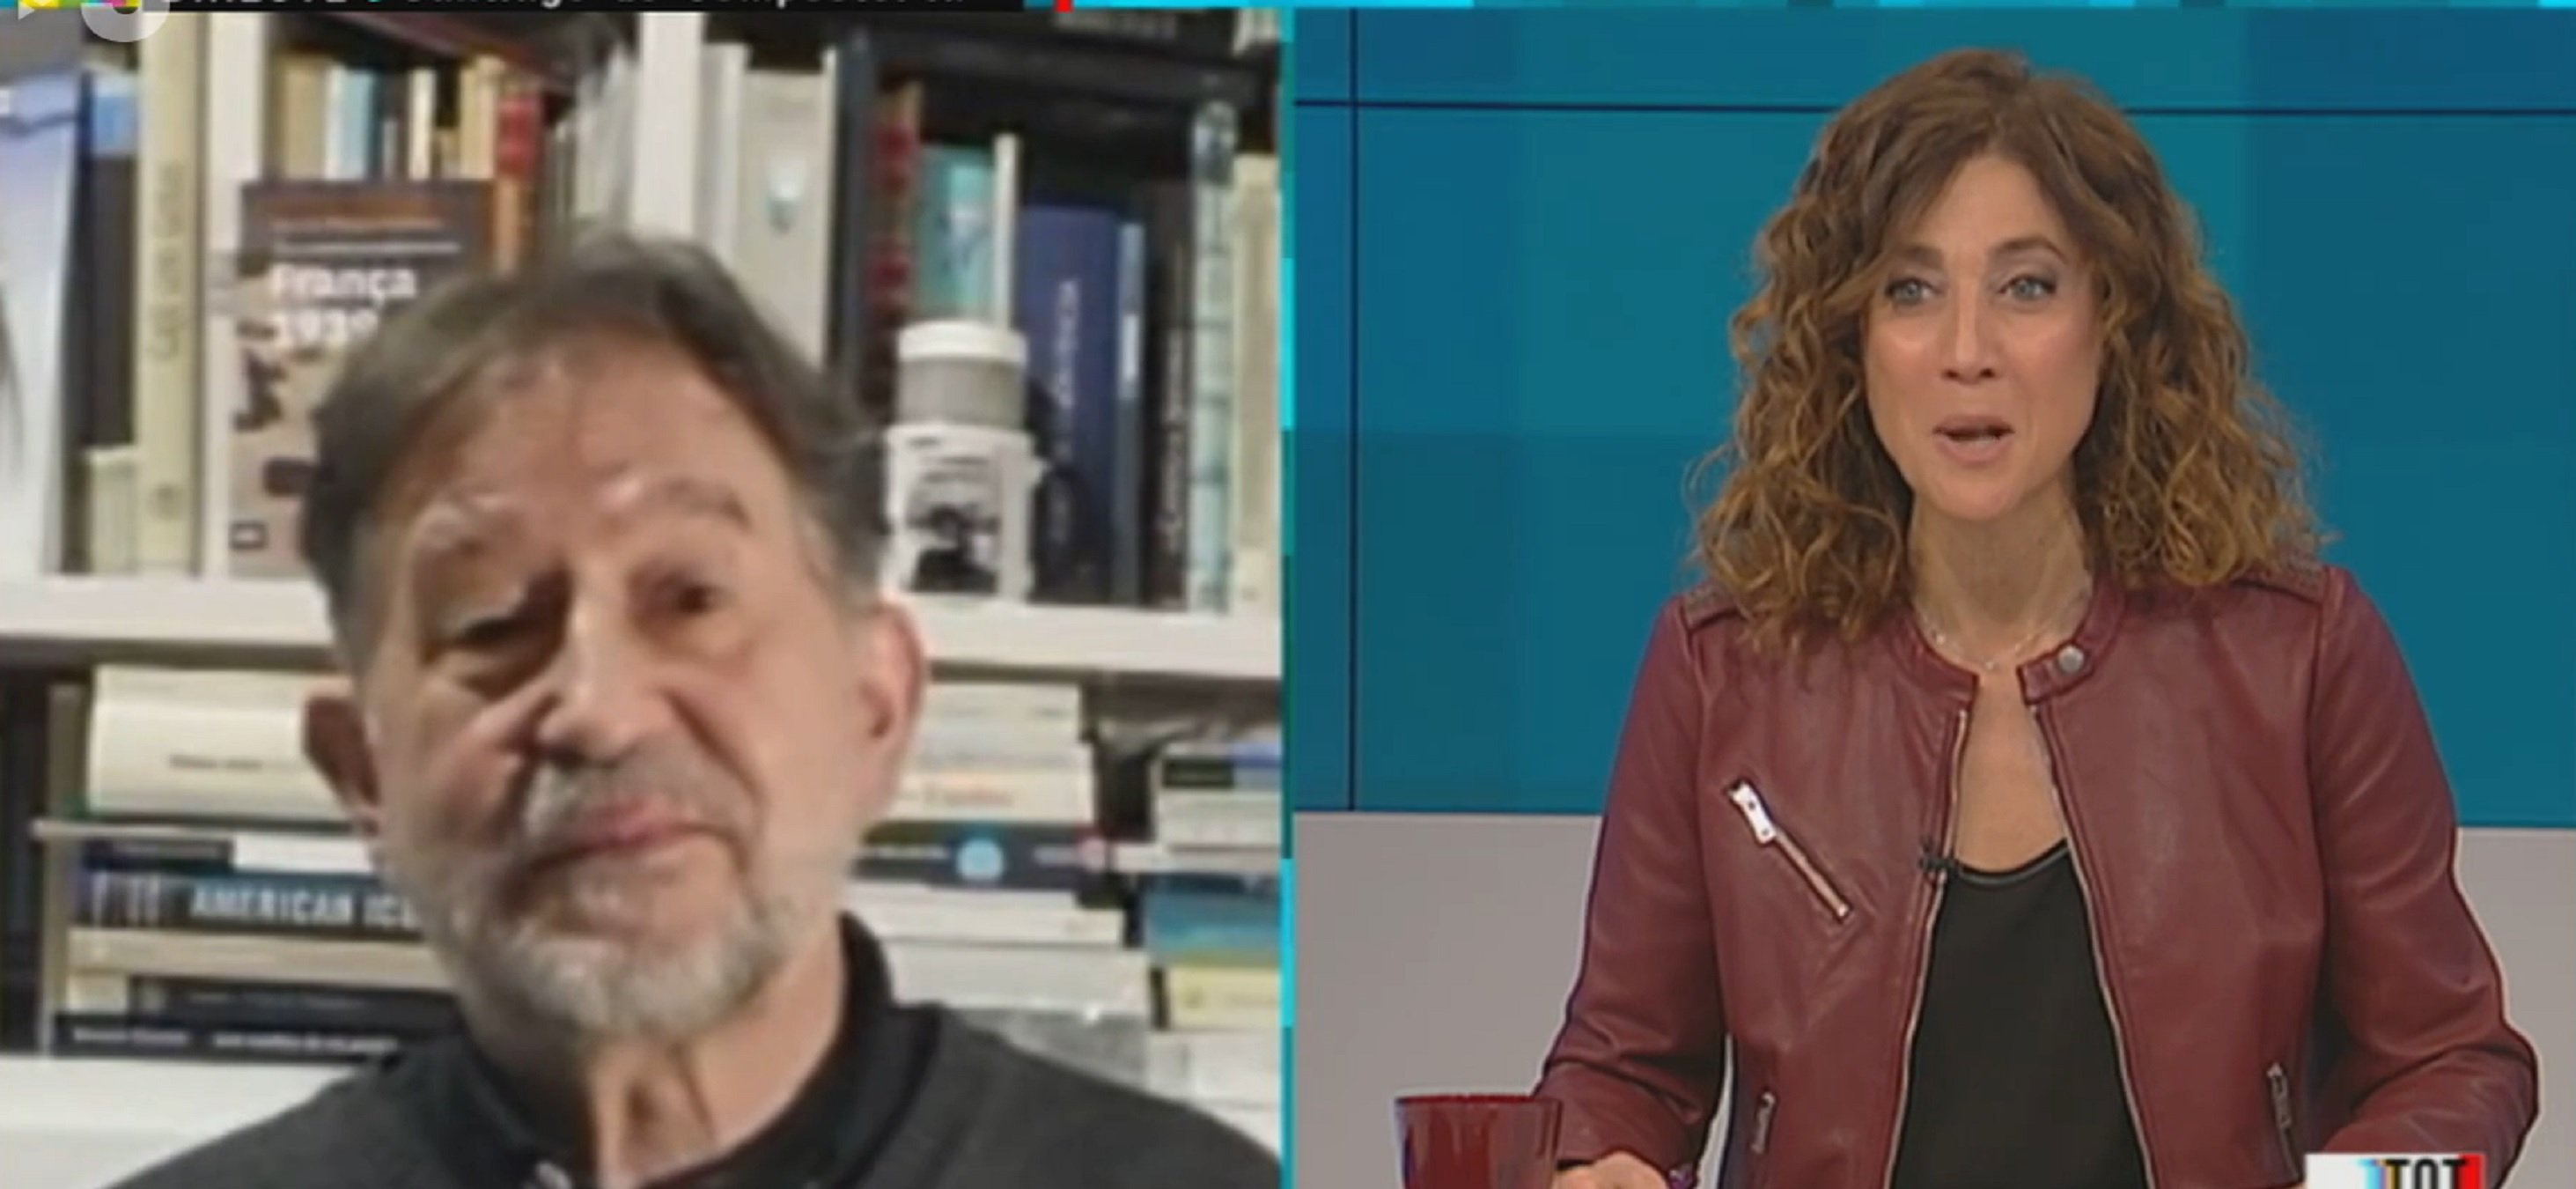 Suso de Toro impresiona en TV3 hablando un perfecto catalán toda la entrevista